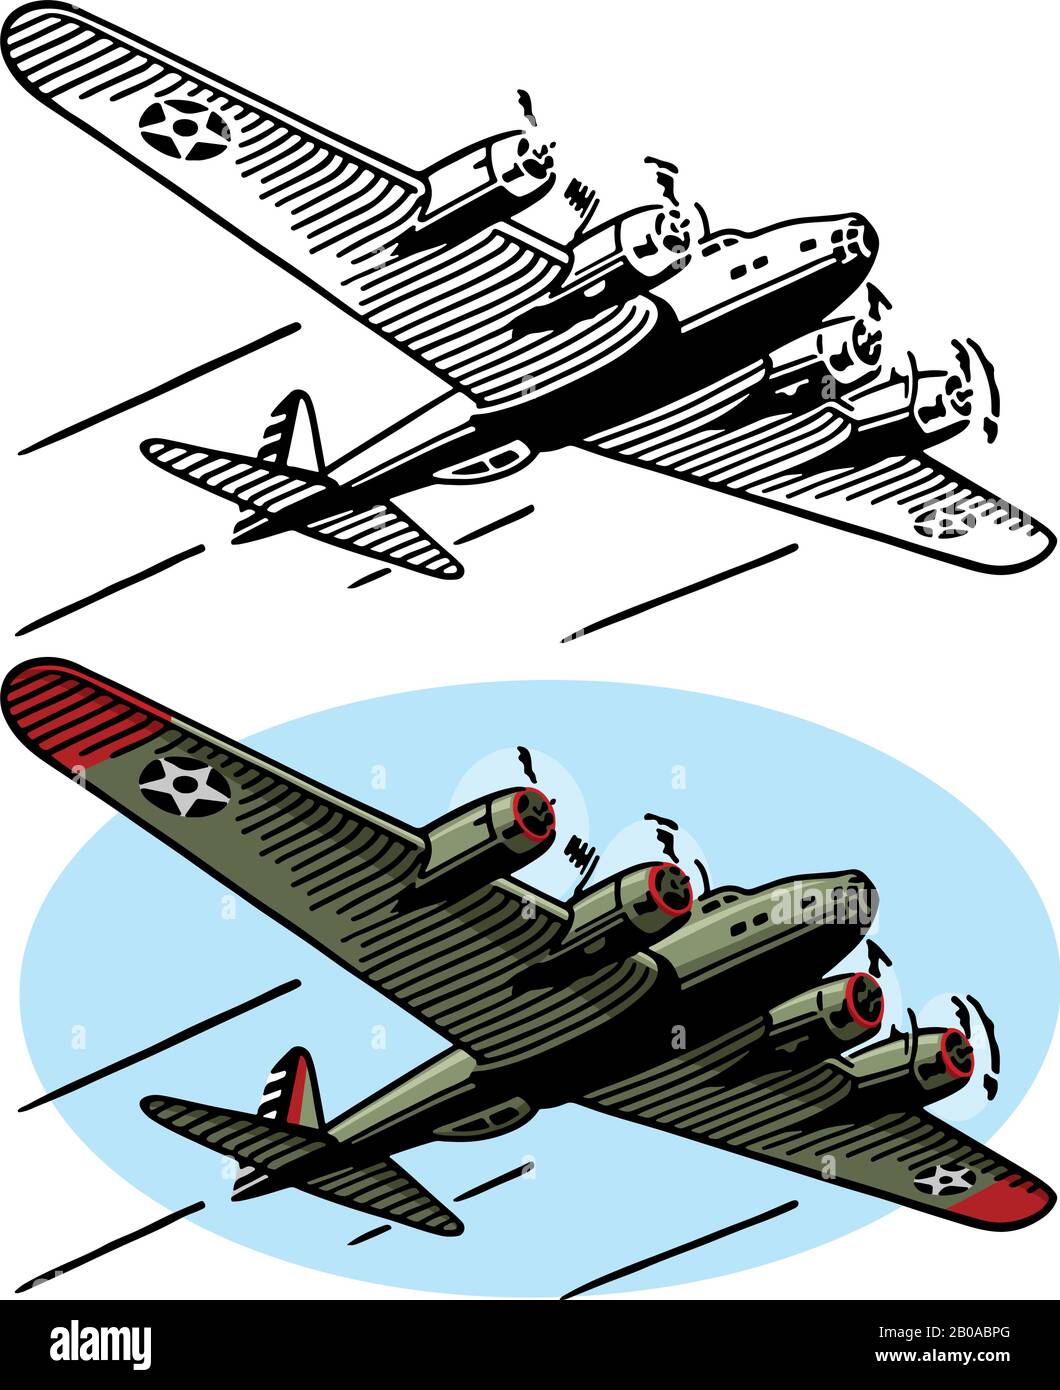 Un disegno del velivolo americano di seconda guerra mondiale il bombardiere di B-17. Illustrazione Vettoriale